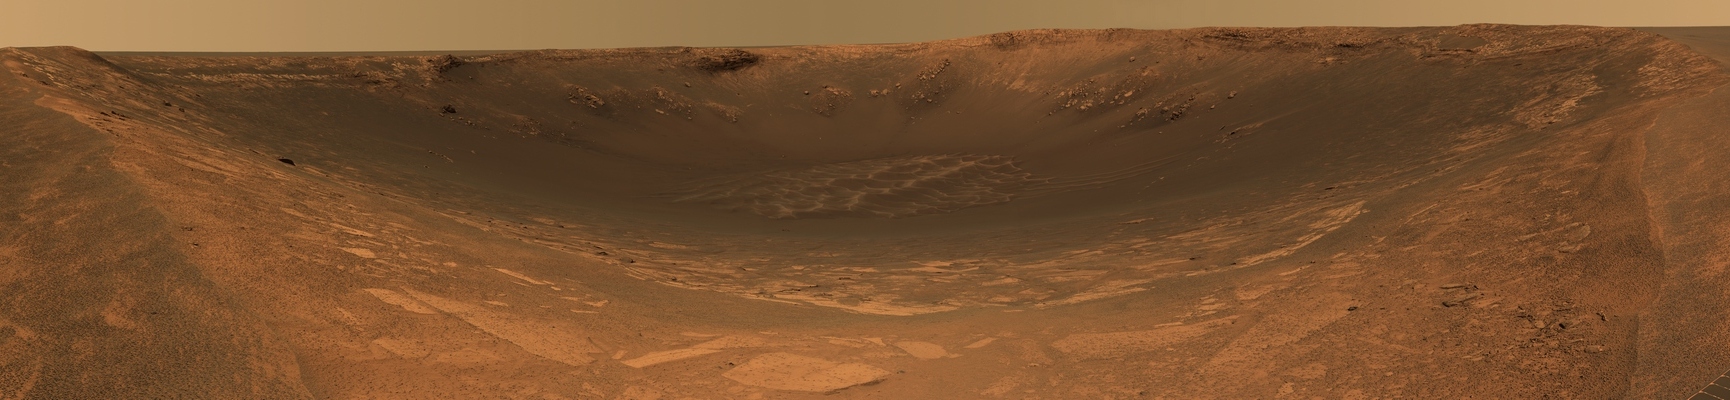 Соединение марс марс транзит. Марс 1610. Марс 2060. Марс (Орловский);. Марс 2032.